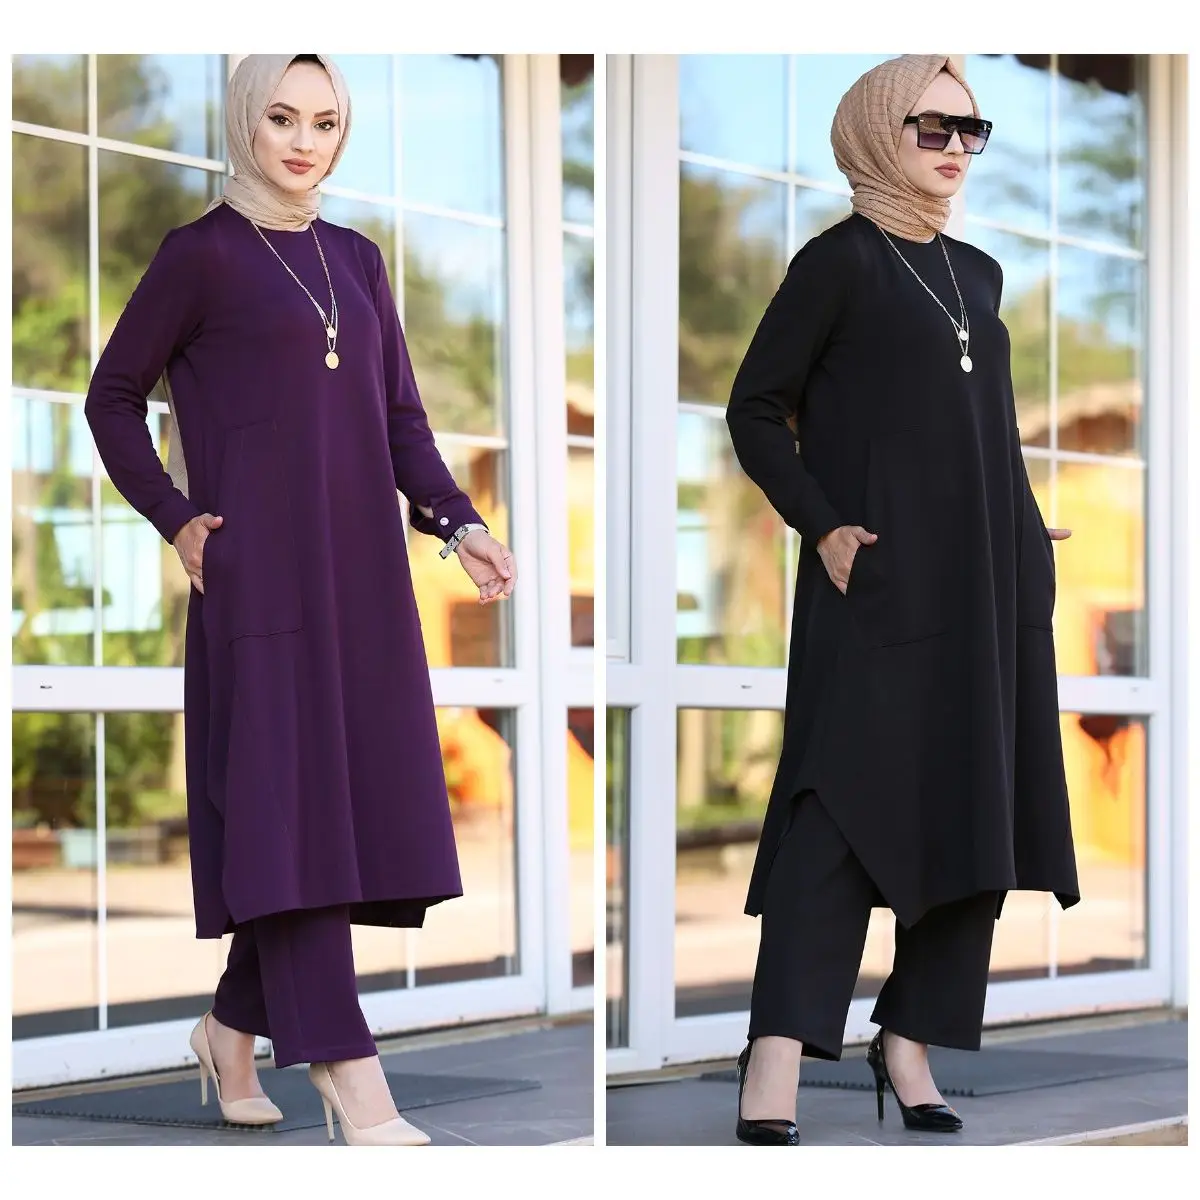 

Мусульманская двойная команда мусульманская Мода Абая кафтан кемпинговая одежда Turley Дубай 2021 модная женская одежда